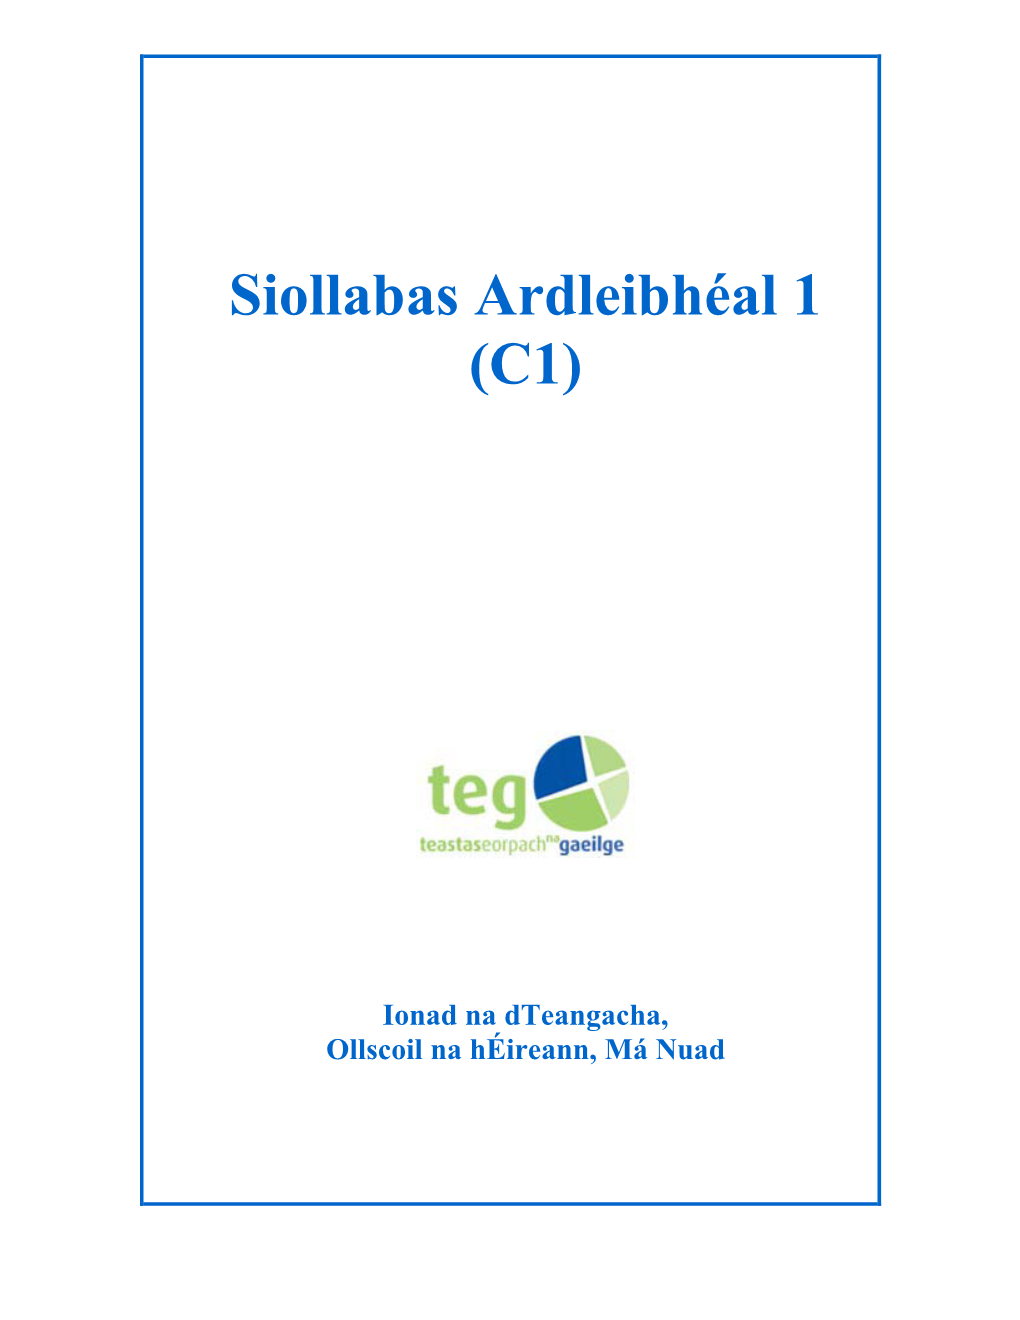 Siollabas Ardleibhéal 1 (C1)